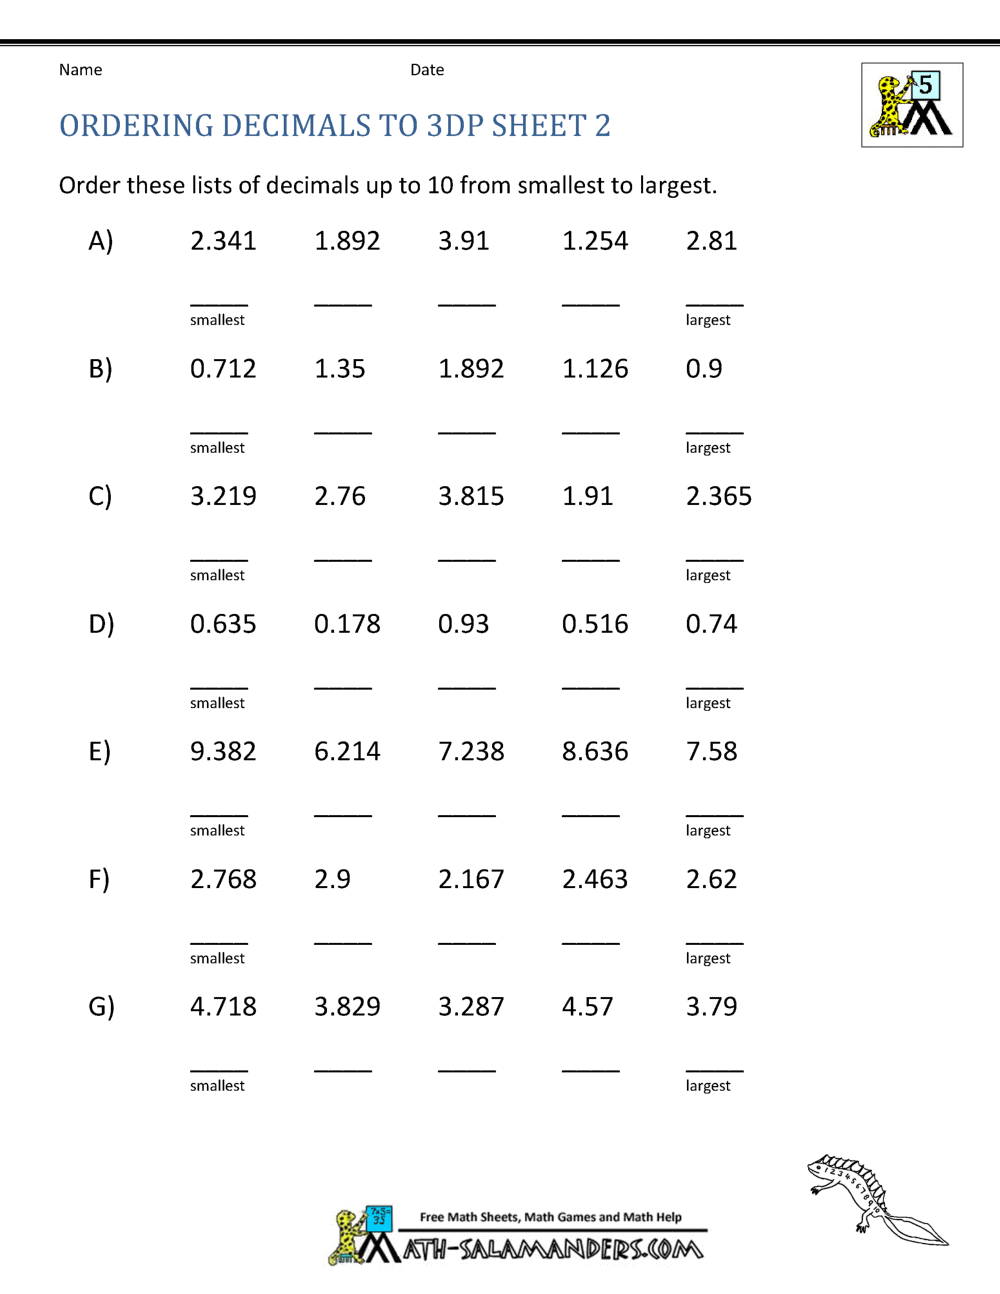 orangeflowerpatterns-download-math-worksheets-5th-grade-decimals